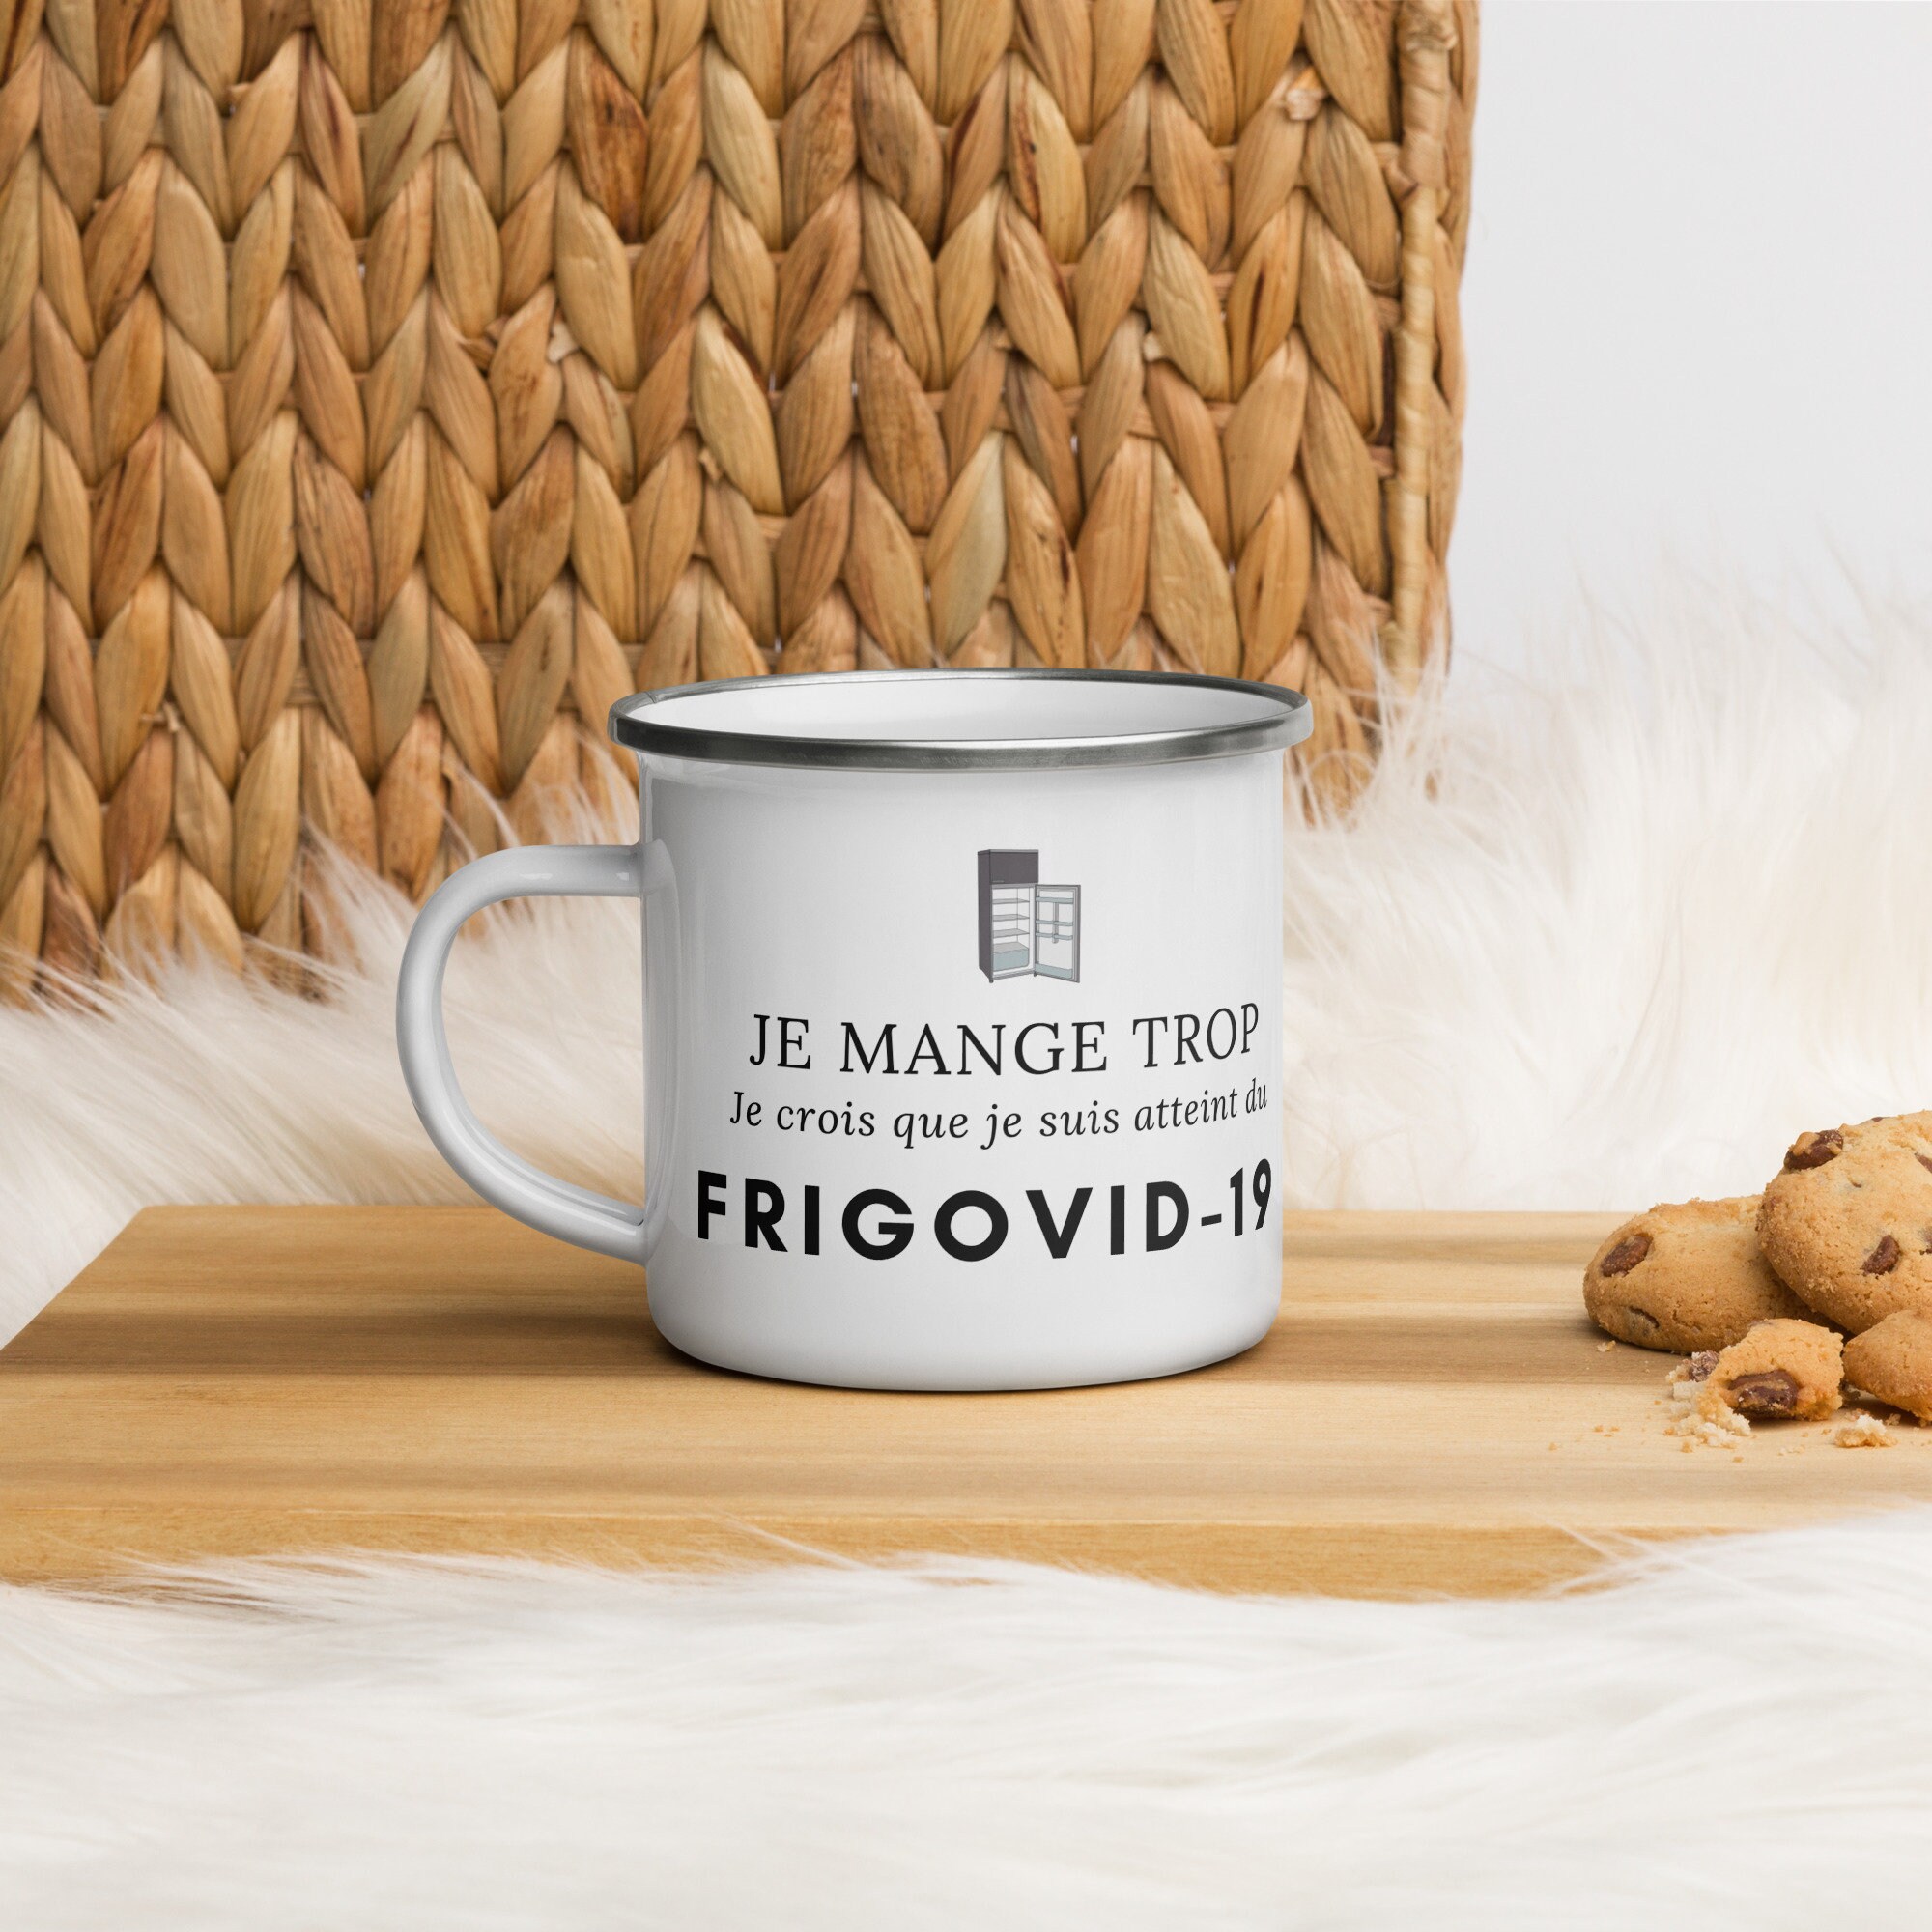 Mug Émaillé Frigovid-19, Phrase Humoristique